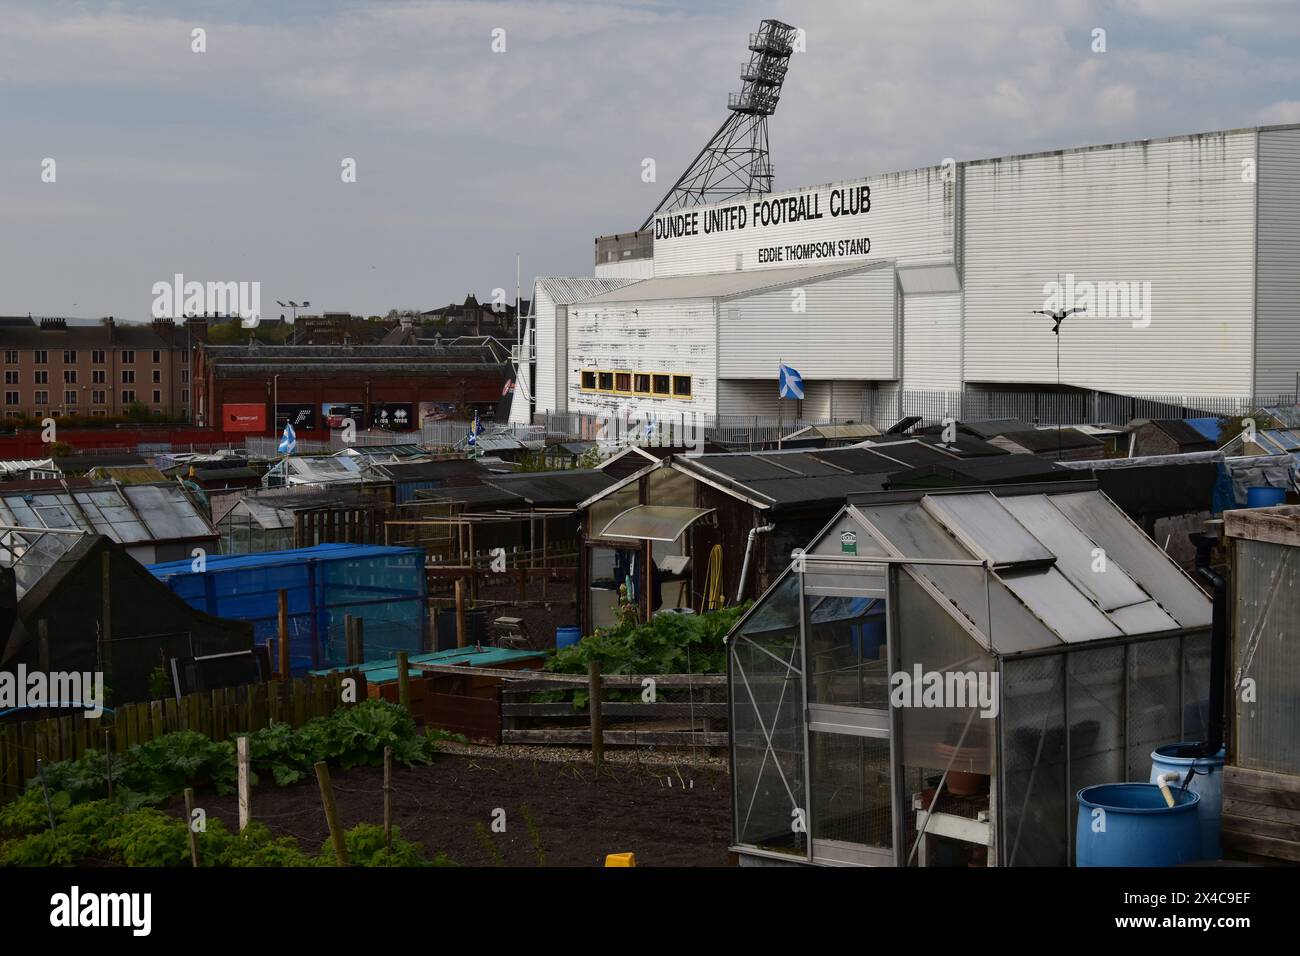 Gewächshäuser und Schuppen in der Arklay Street und Eddie Thompson Stand des benachbarten Tannadice Park, Heimstadion des Dundee United FC, Schottland. Stockfoto